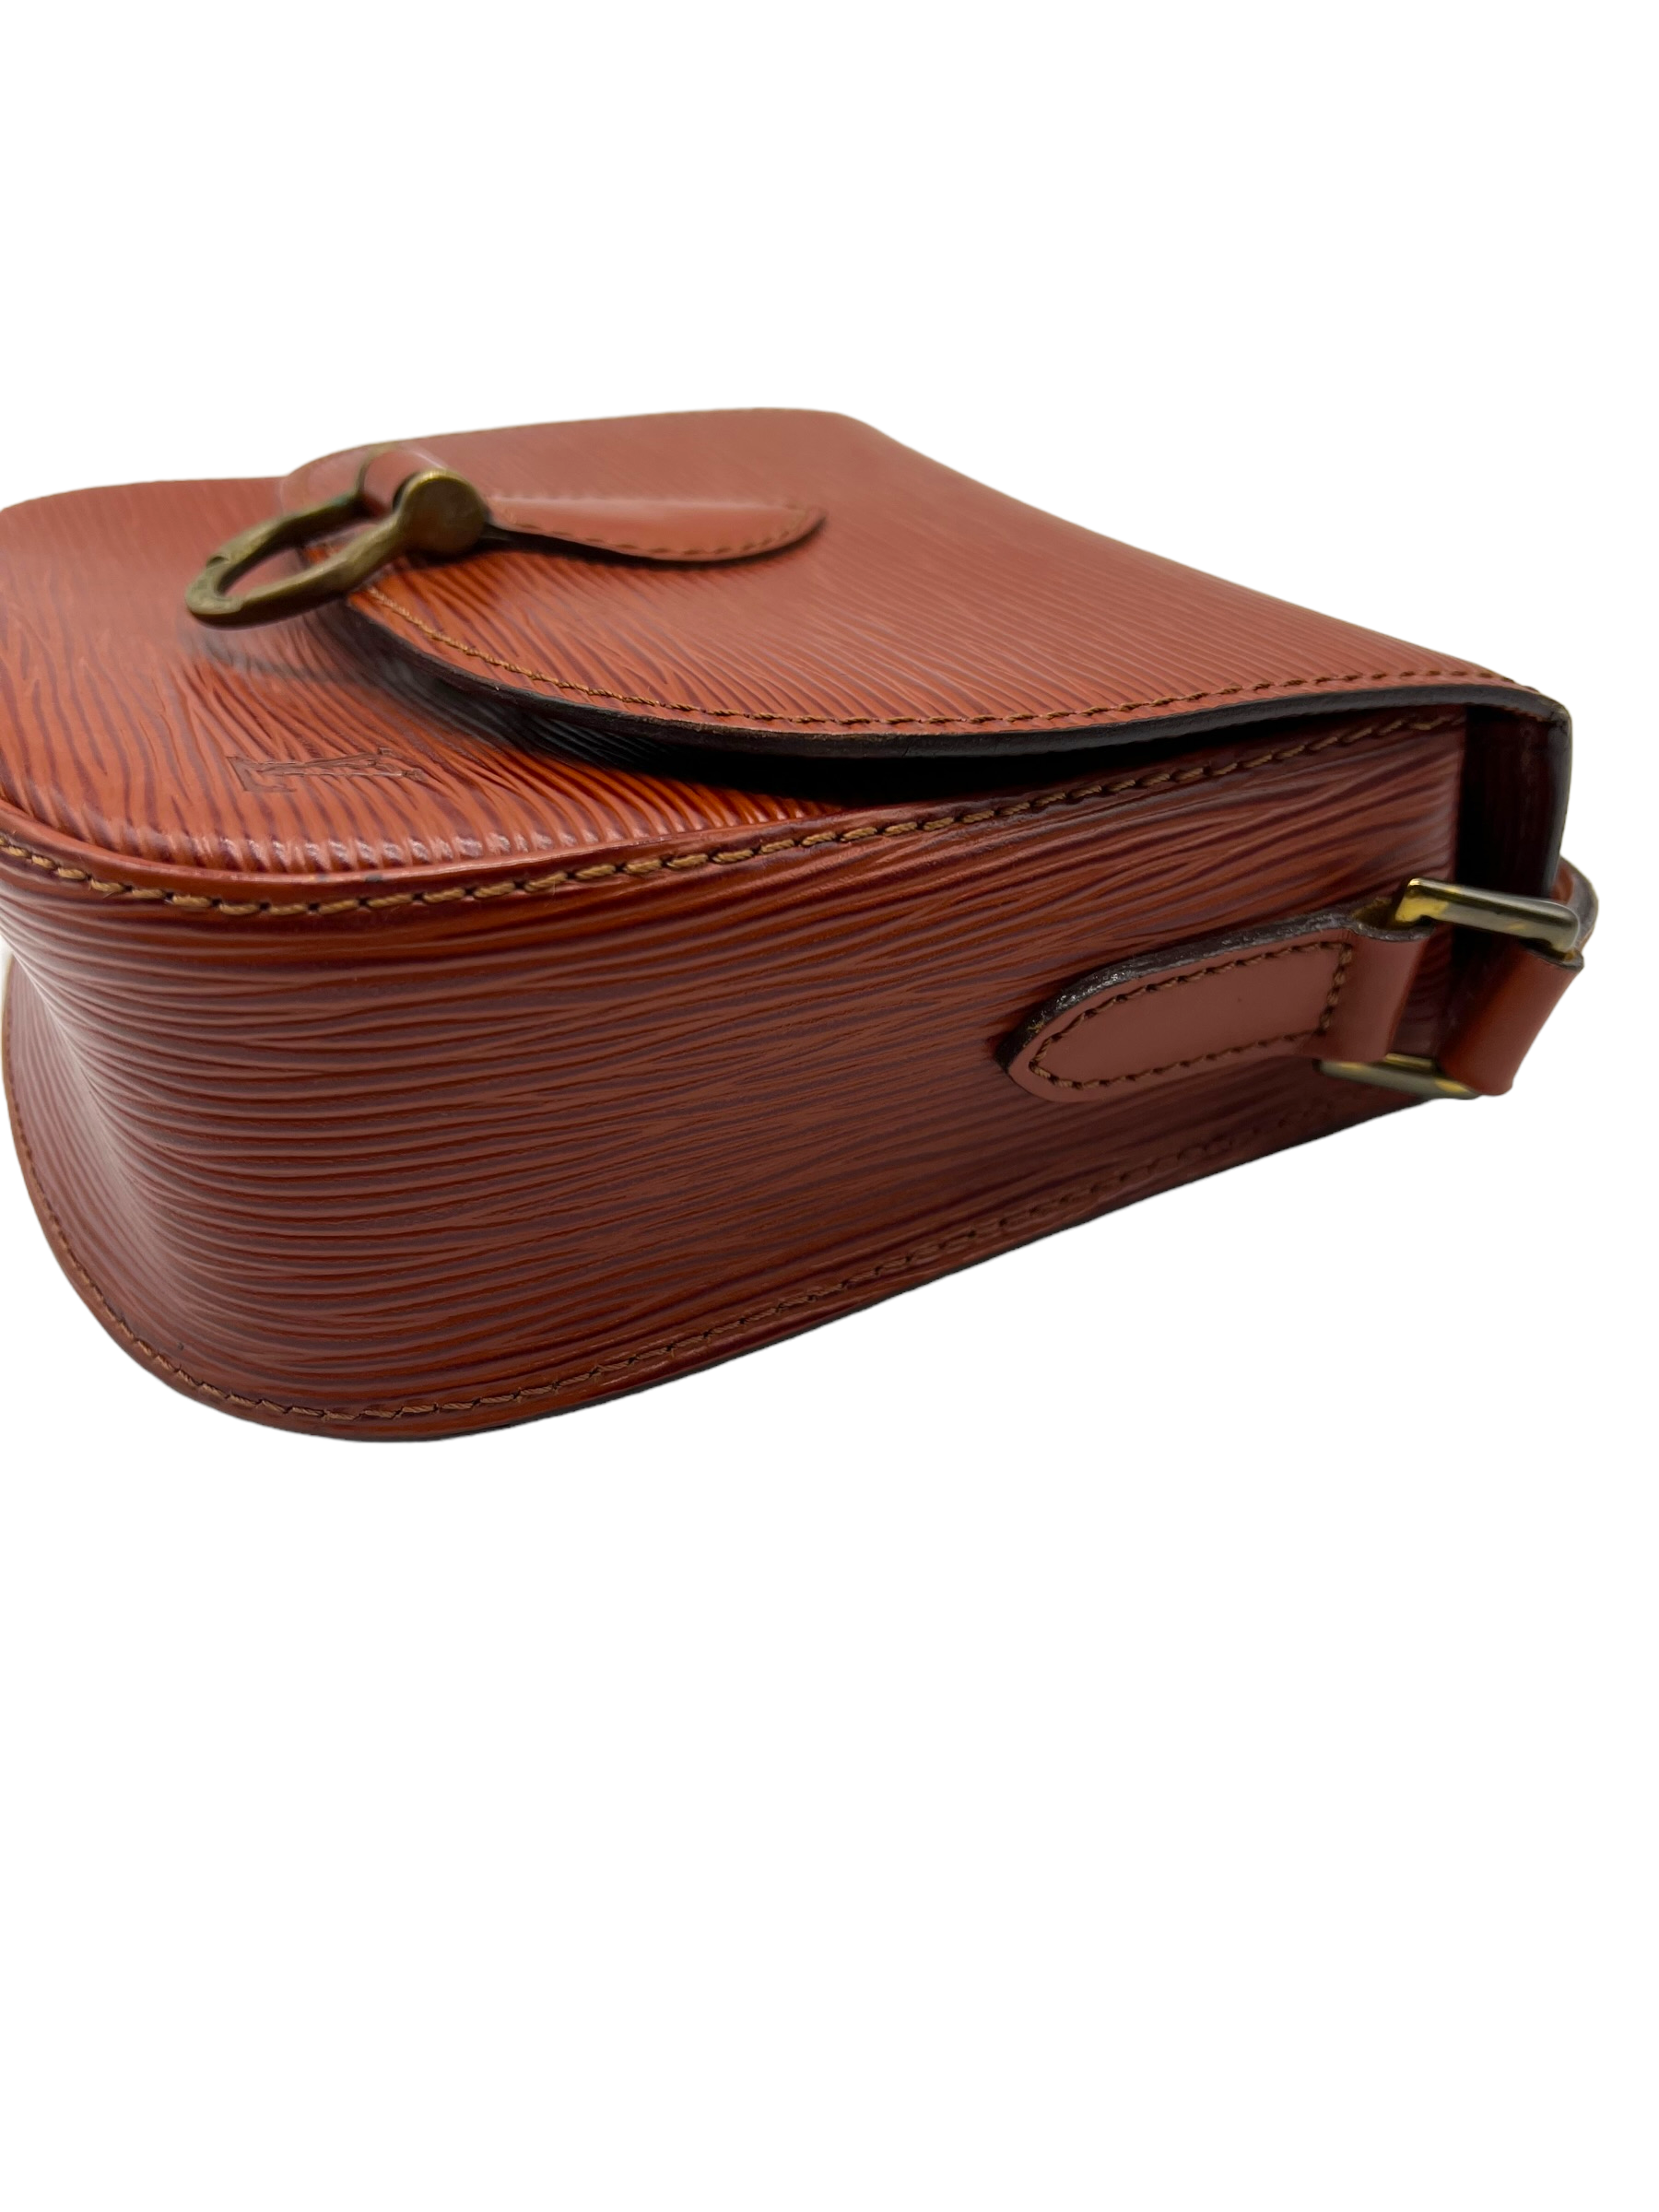 Handbag Louis Vuitton Saint Cloud M52197 Castilian Red Epi 121060300